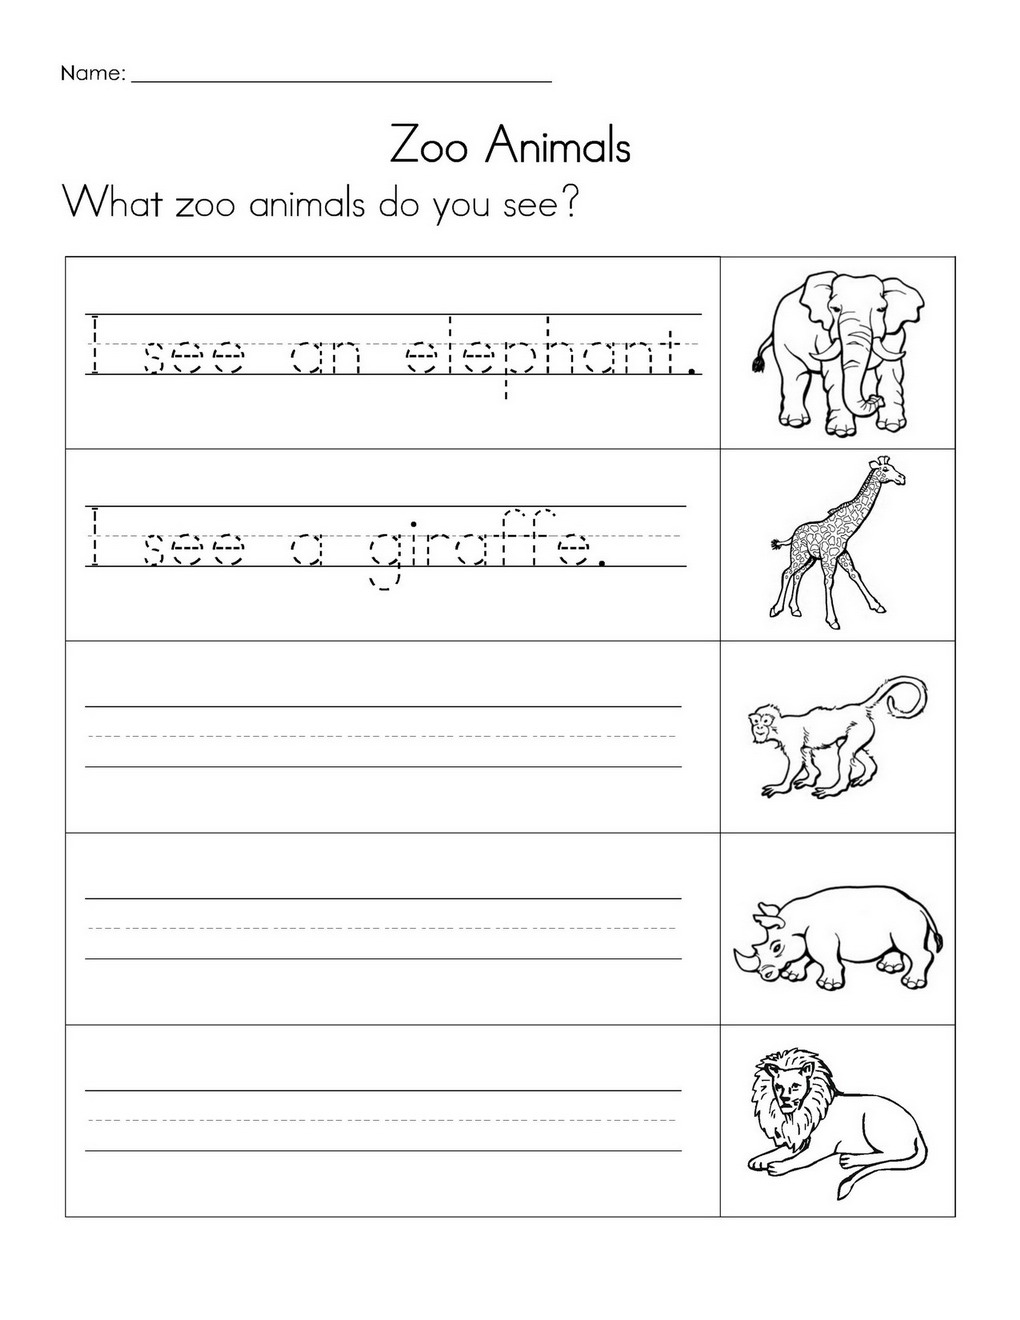 Animal Writing Sentence Worksheet Image